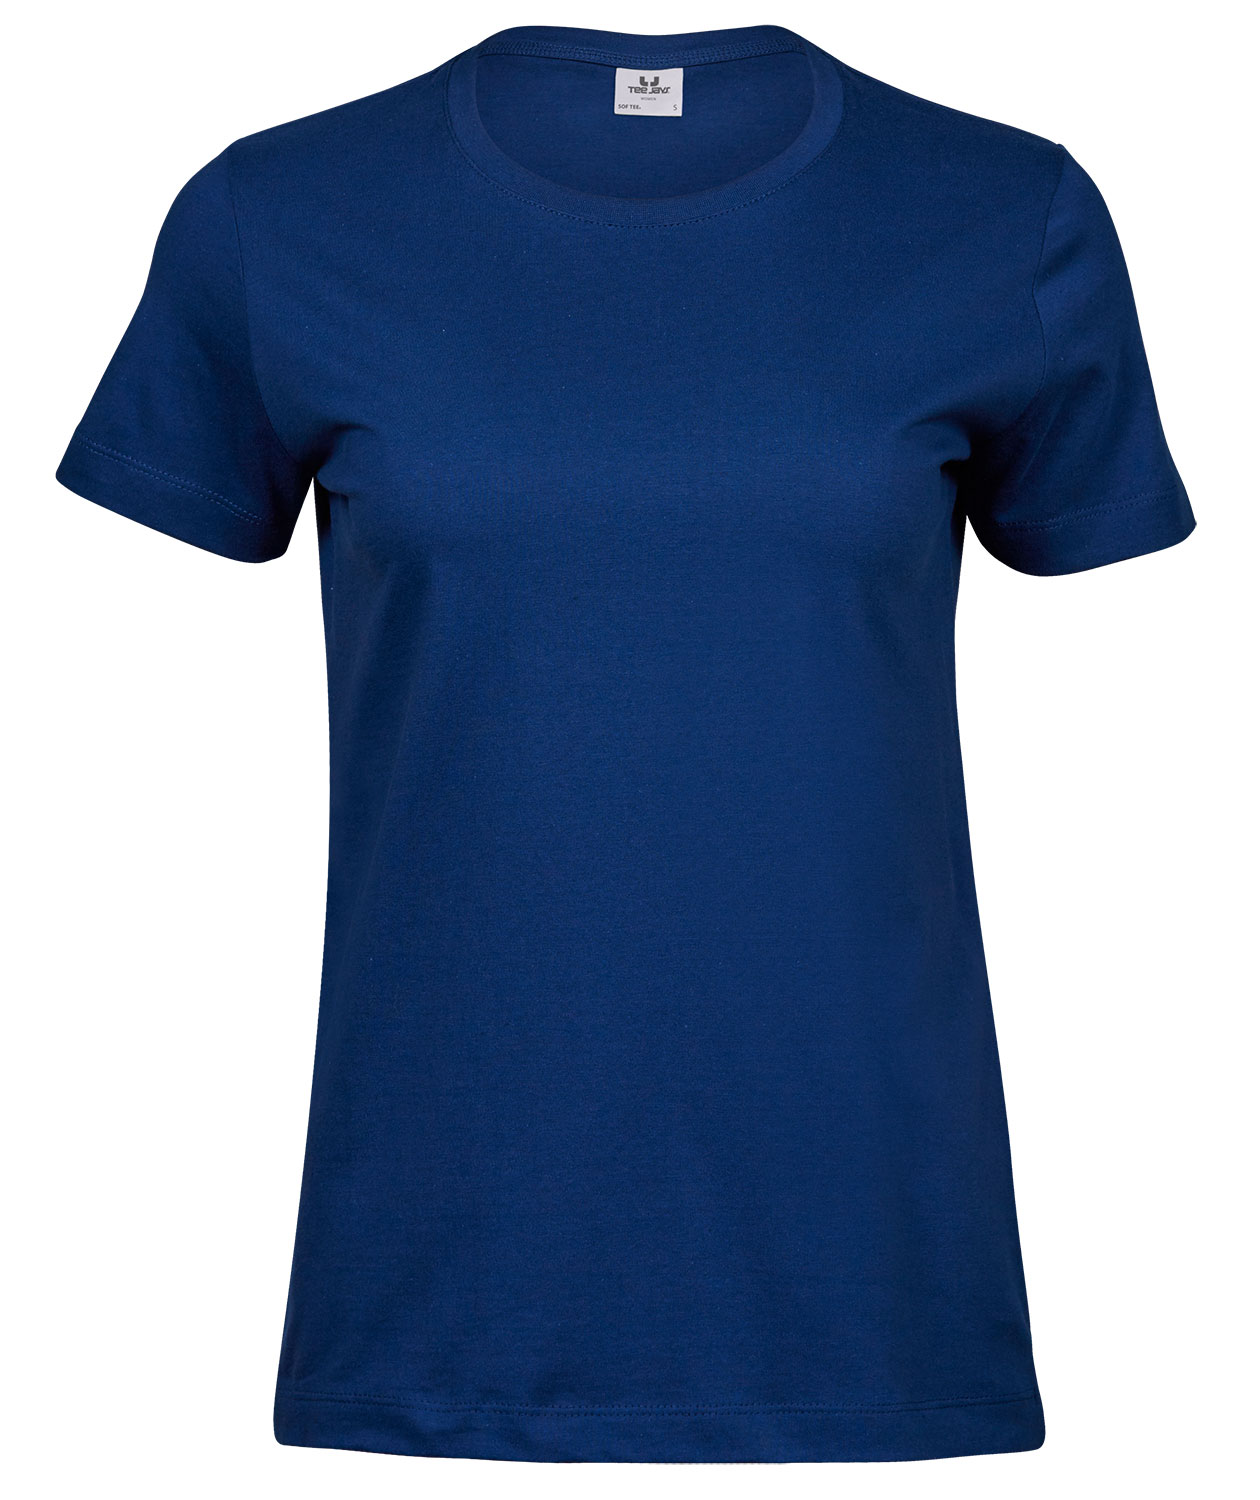 DAMEN T-SHIRT ST2600 S-XXL UNIFARBEN Arbeitsshirt Kurzarm Shirt Workwear Frauen 